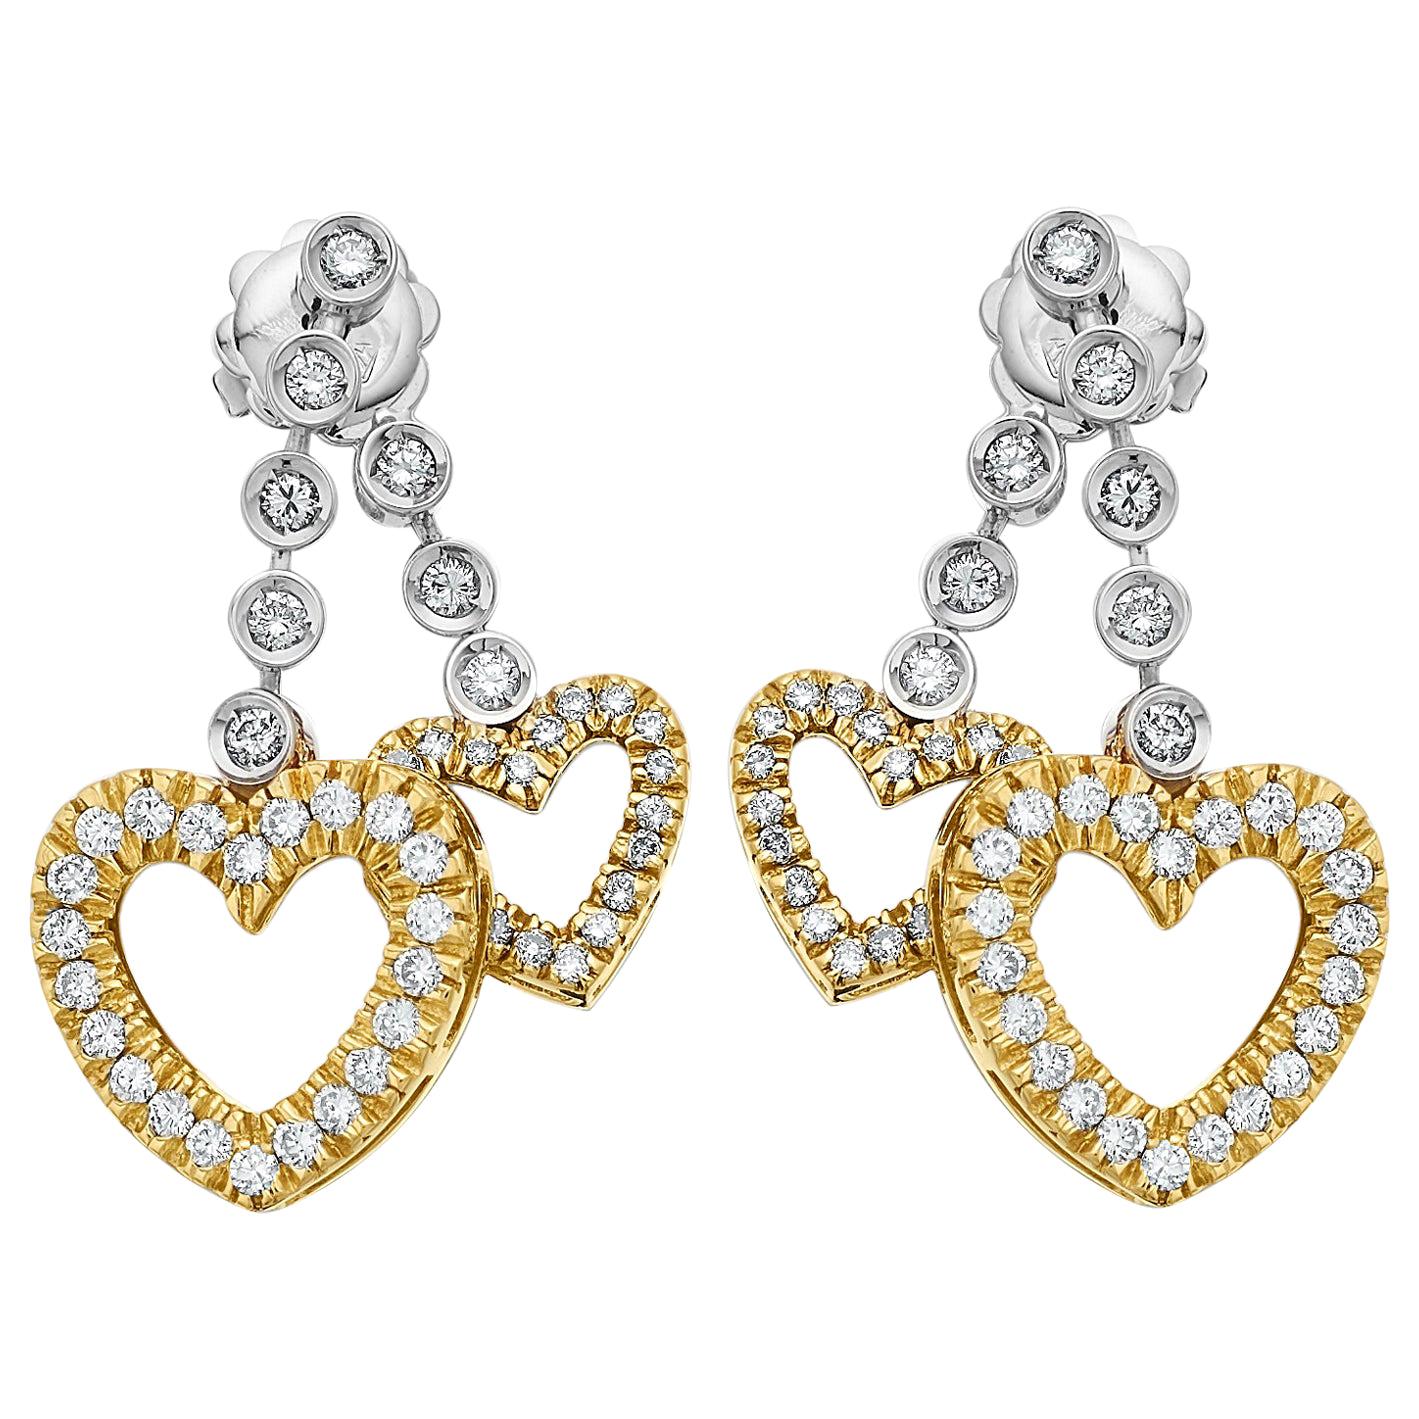 Bespoke Design Diamond Twin Love Heart Drop Earrings in 18K Gold